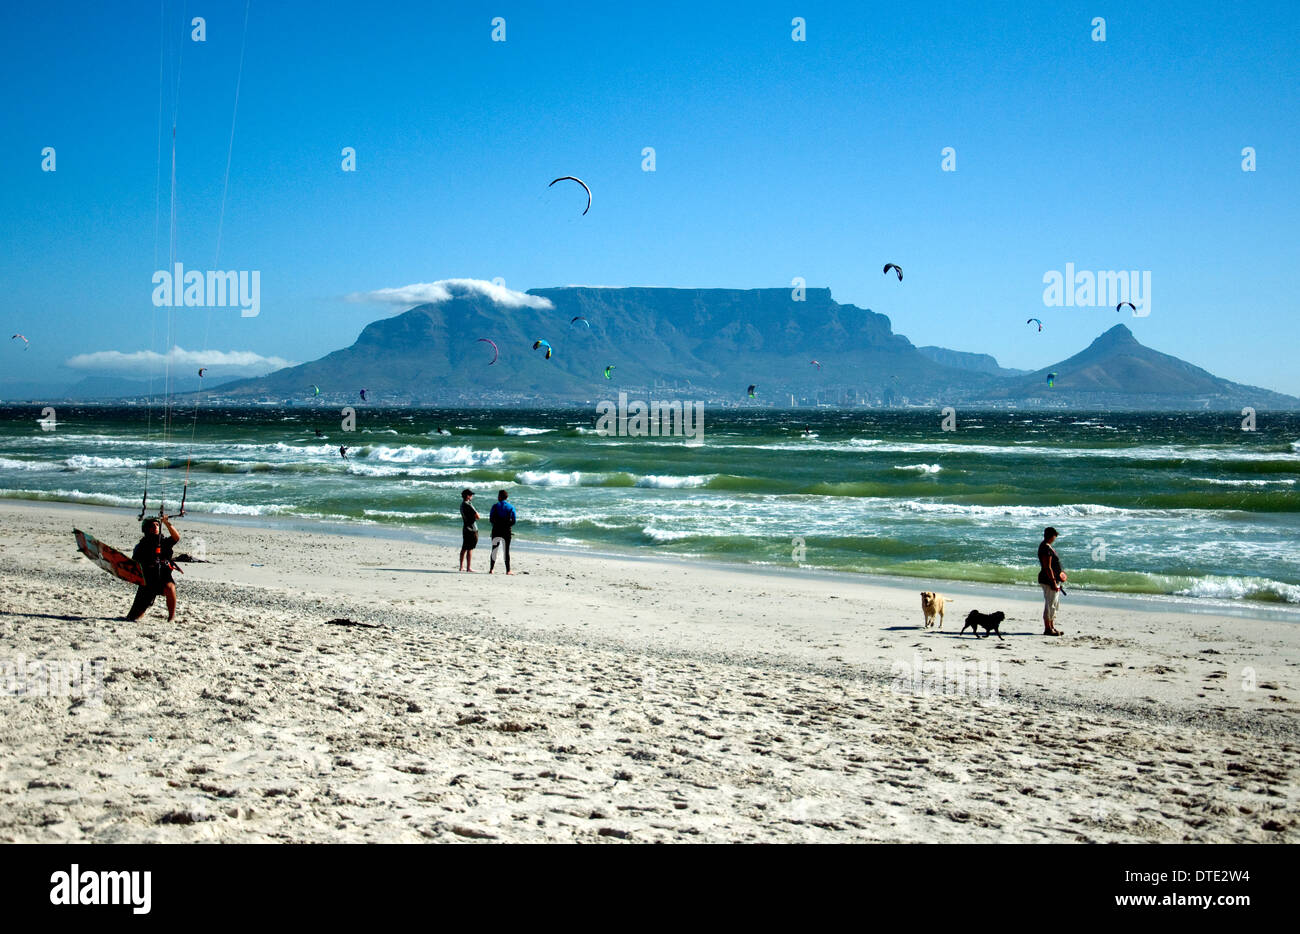 Cape Town iconici Table Mountain visto da Blouberg Strand. Kiteboards adornano il cielo e la gente rilassata sulla spiaggia. Foto Stock